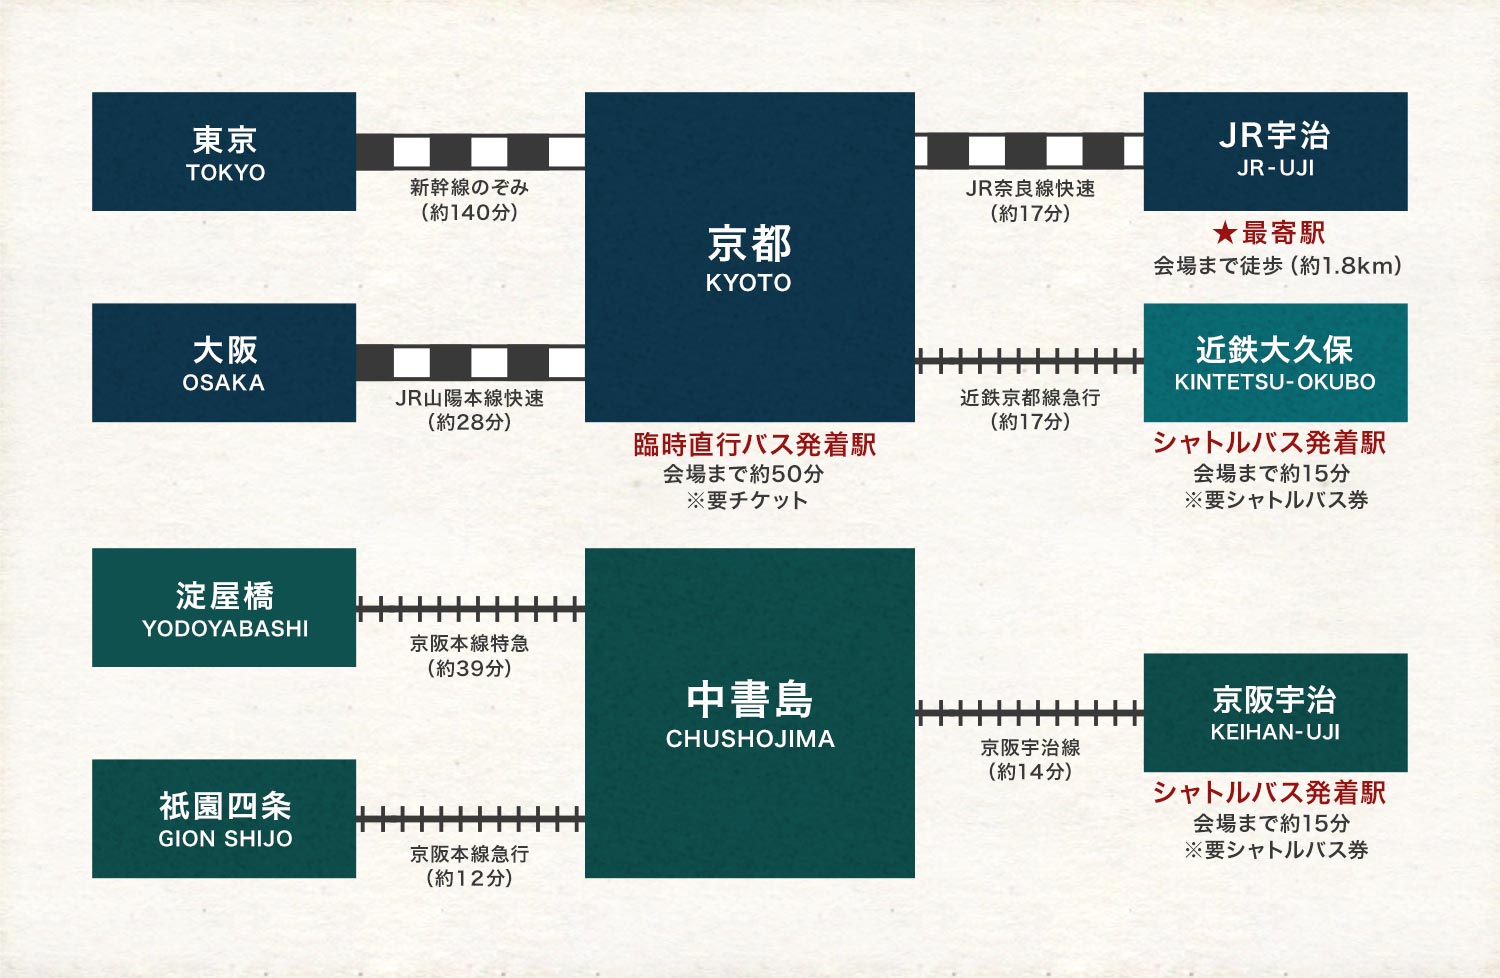 会場までの電車でのアクセス図:京都駅から会場まで約50分です。最寄り駅はJR宇治駅、近鉄大久保駅と京阪宇治駅からは有料の
                    シャトルバスが運行します。シャトルバスは会場まで約15分です。